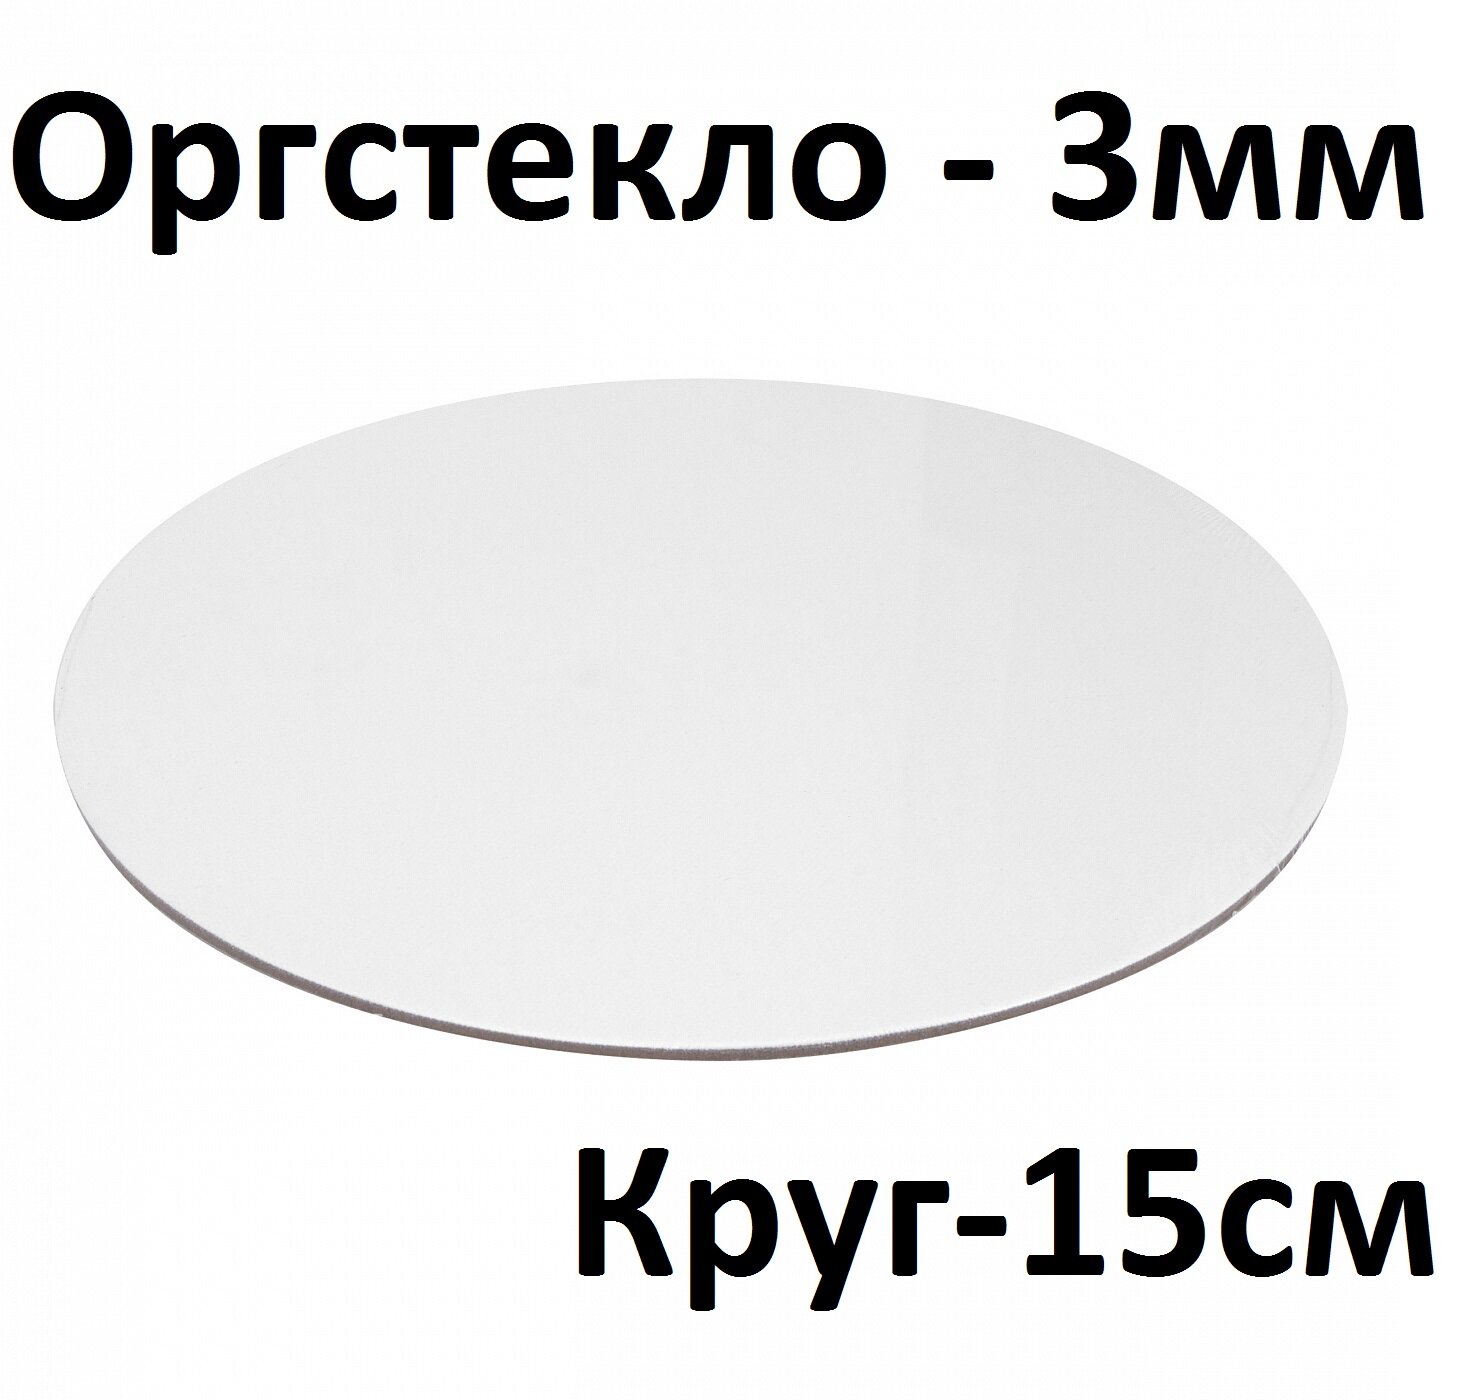 Пластик белый круглый 15 см 3 мм 1 шт. / Полистирол белый диаметр 150 мм